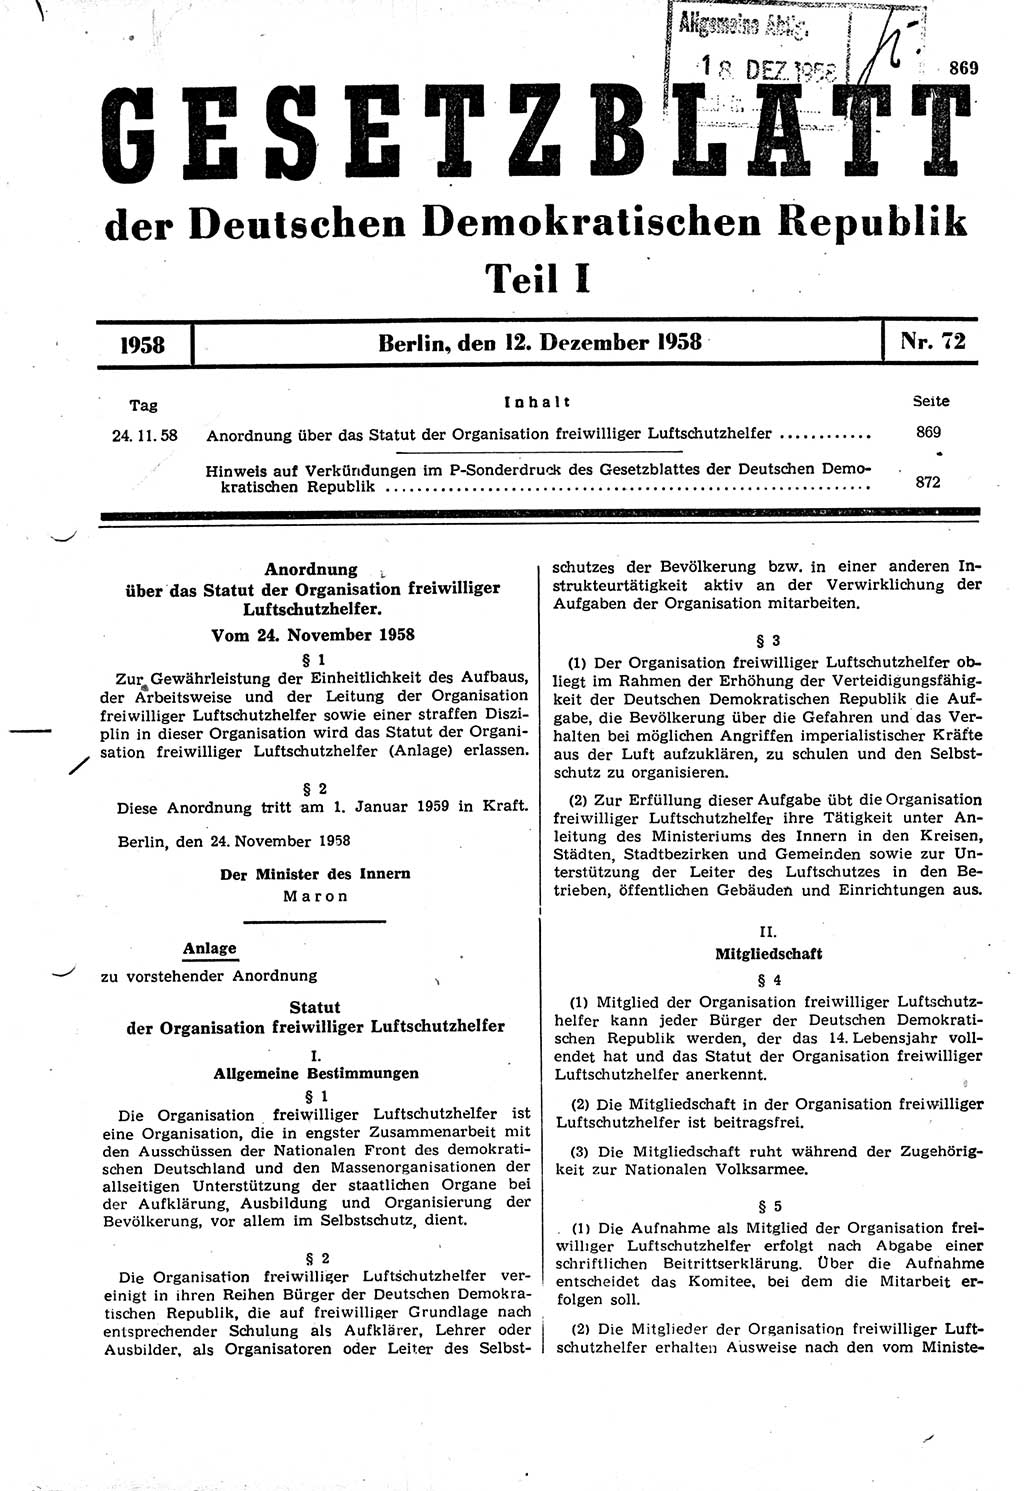 Gesetzblatt (GBl.) der Deutschen Demokratischen Republik (DDR) Teil Ⅰ 1958, Seite 869 (GBl. DDR Ⅰ 1958, S. 869)